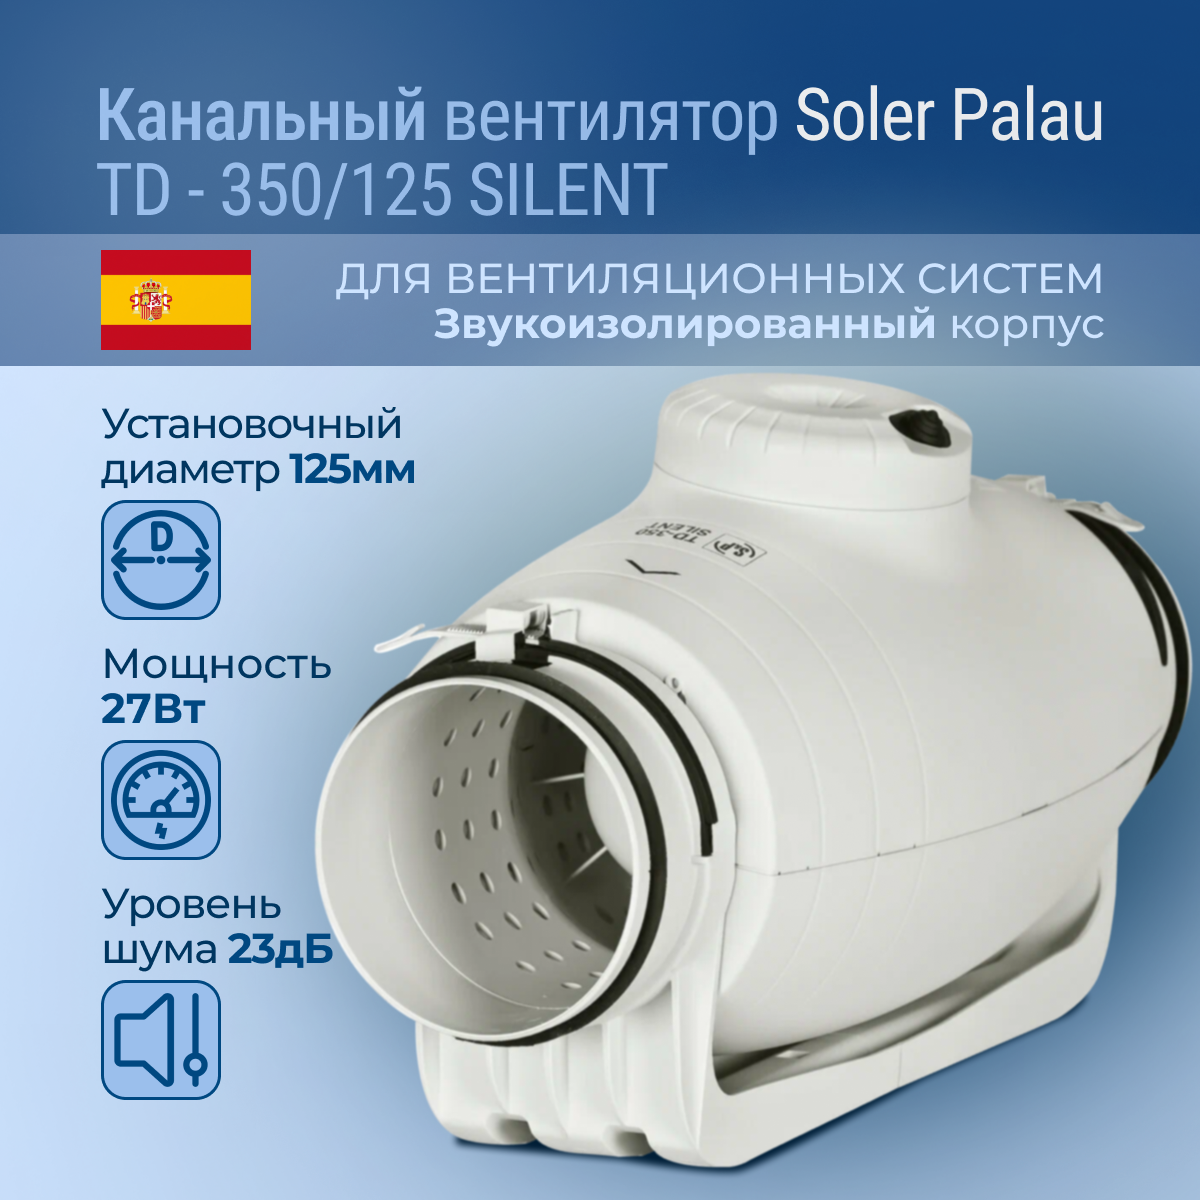 Канальный вентилятор Soler Palau TD-350/125 Silent